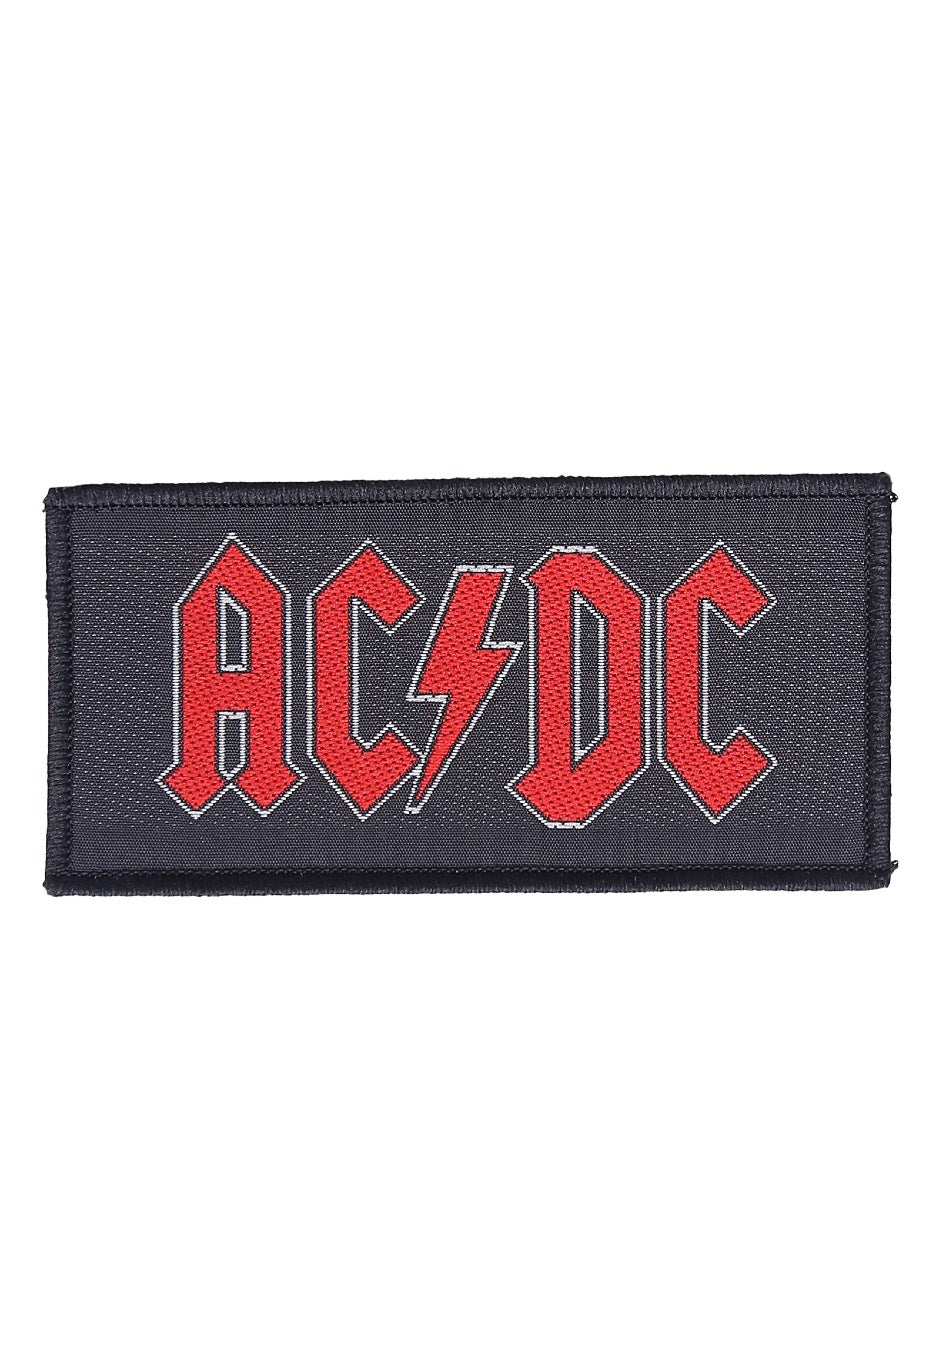 AC/DC - Logo - Patch